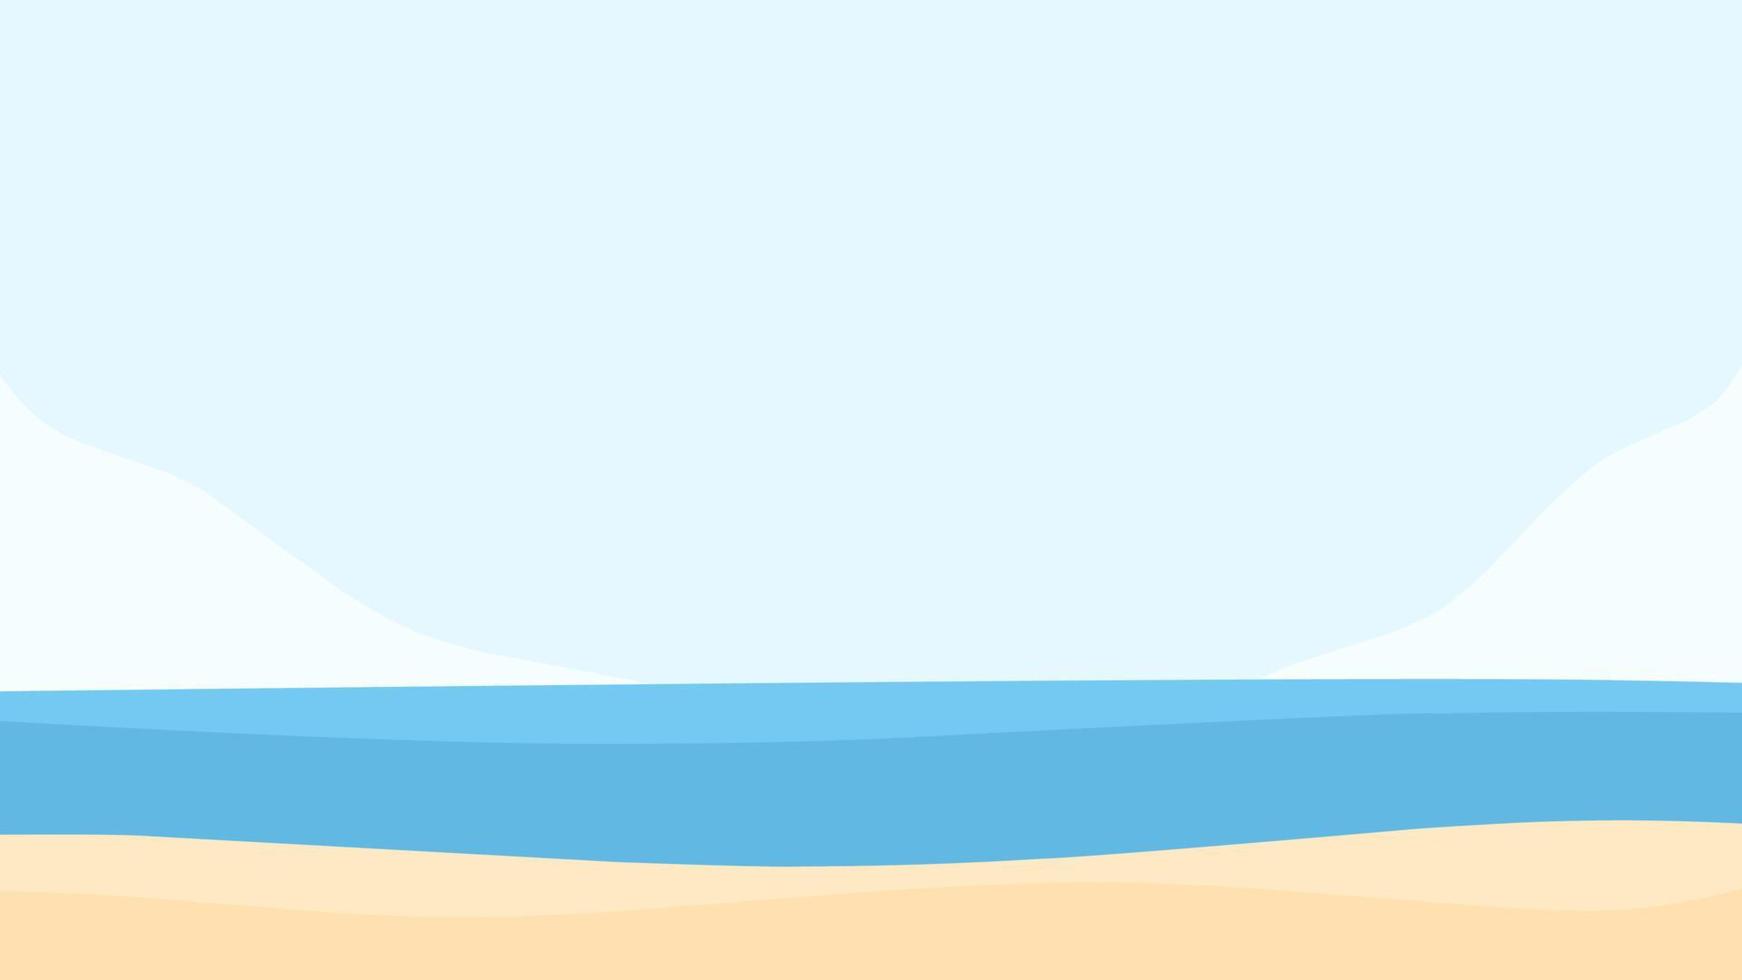 ilustración de paisaje fondo de playa pacífica con mar azul y cielo despejado, cocoteros y faro adecuado para el diseño de verano, vacaciones, decoración y más vector